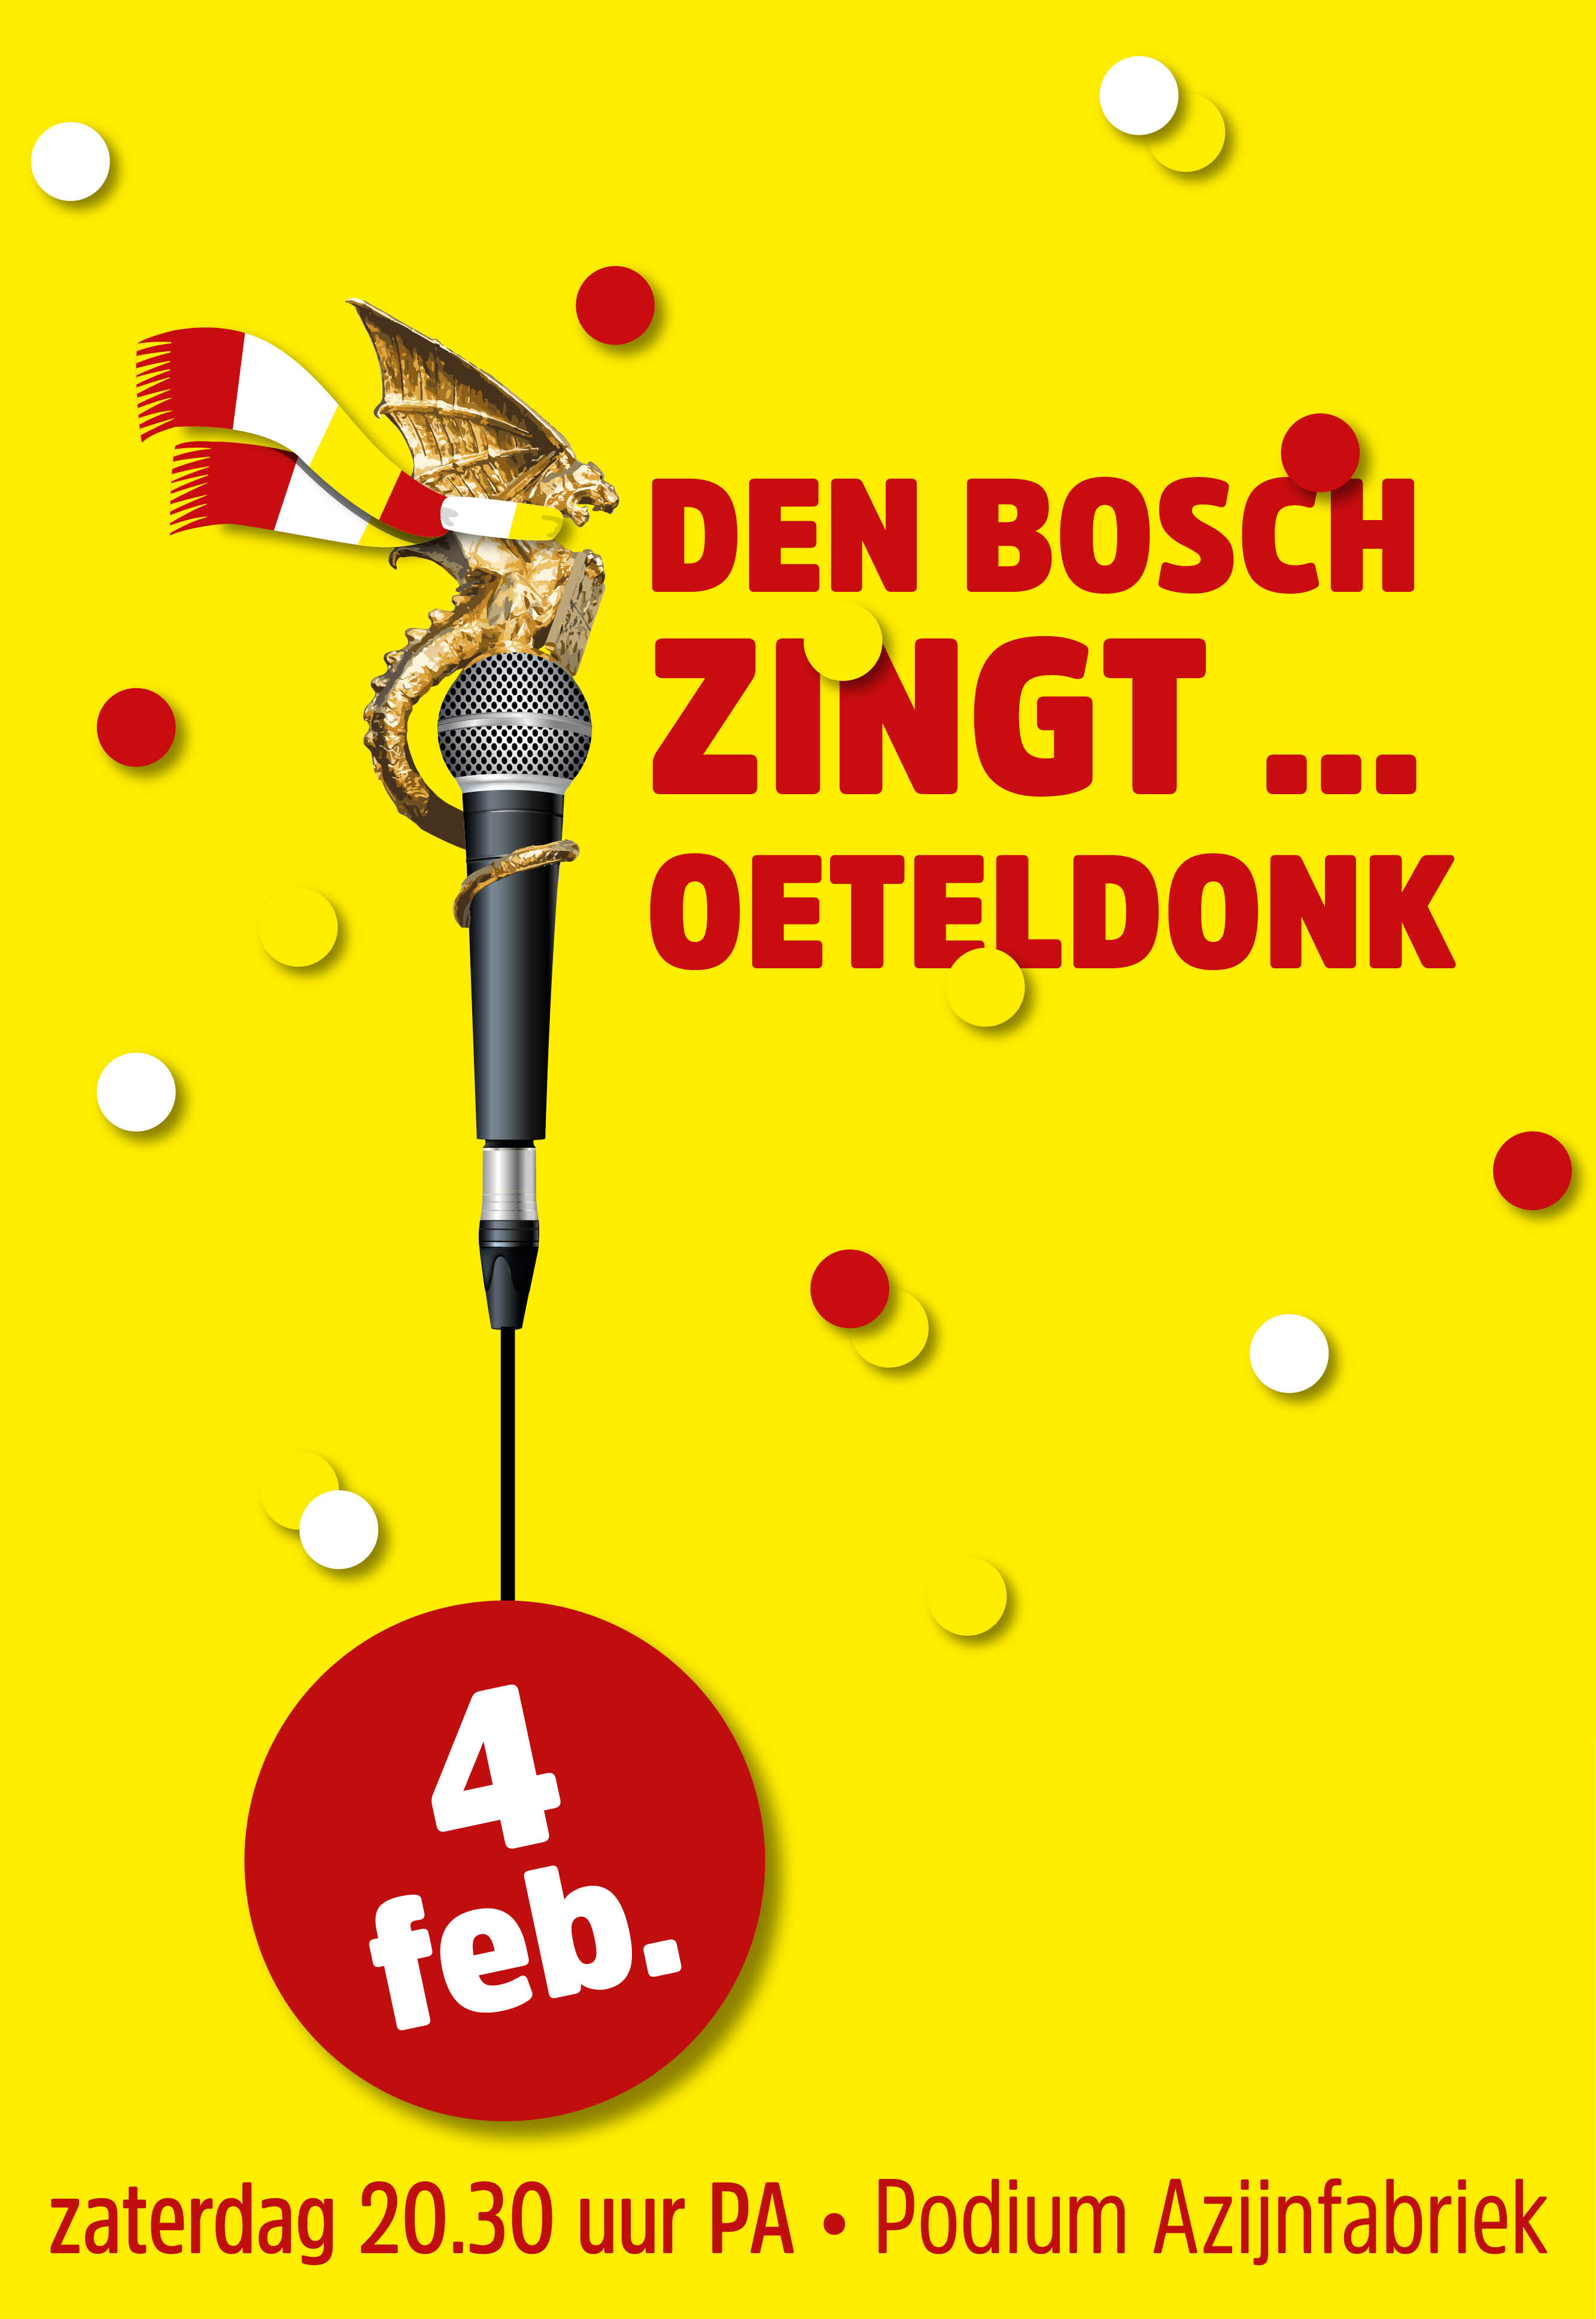 Ticket kopen voor evenement Den Bosch Zingt ... Oeteldonk!